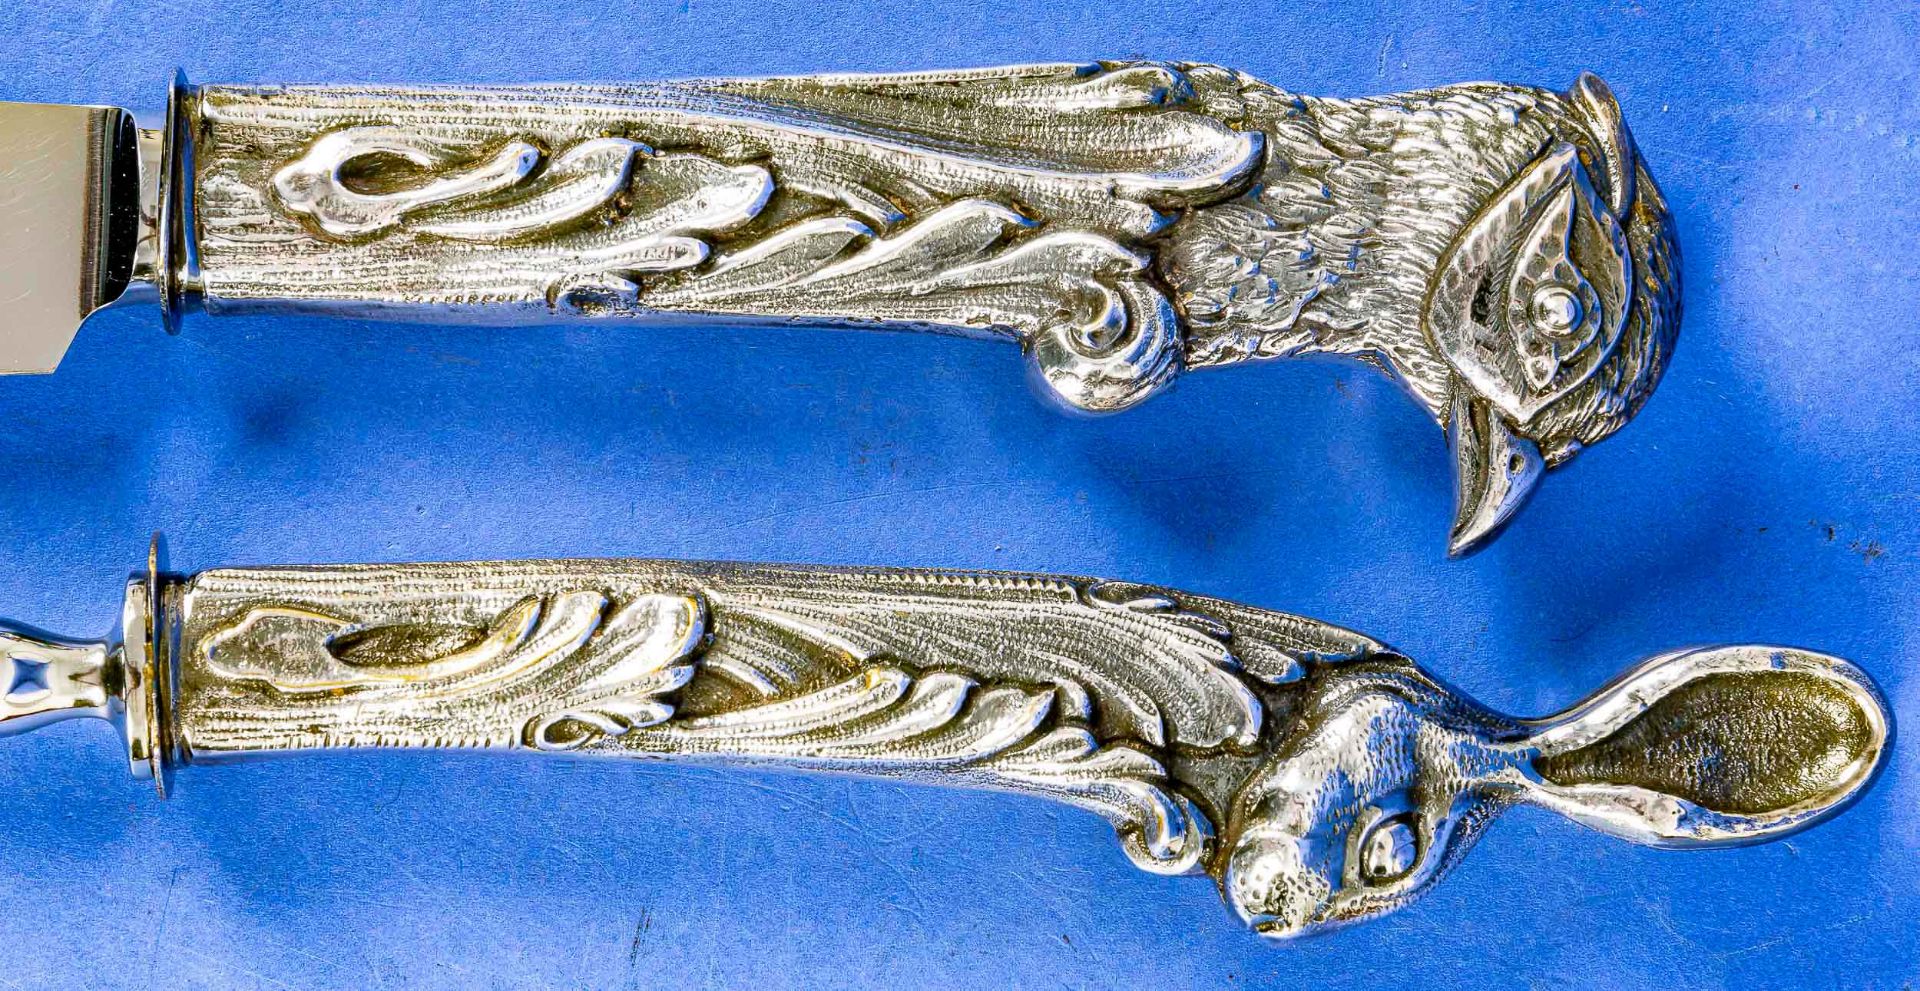 Prachtvolles Tranchierbesteck, bestehend aus Fleischgabel & Bratenmesser; opulent gestaltete Griffs - Bild 3 aus 7